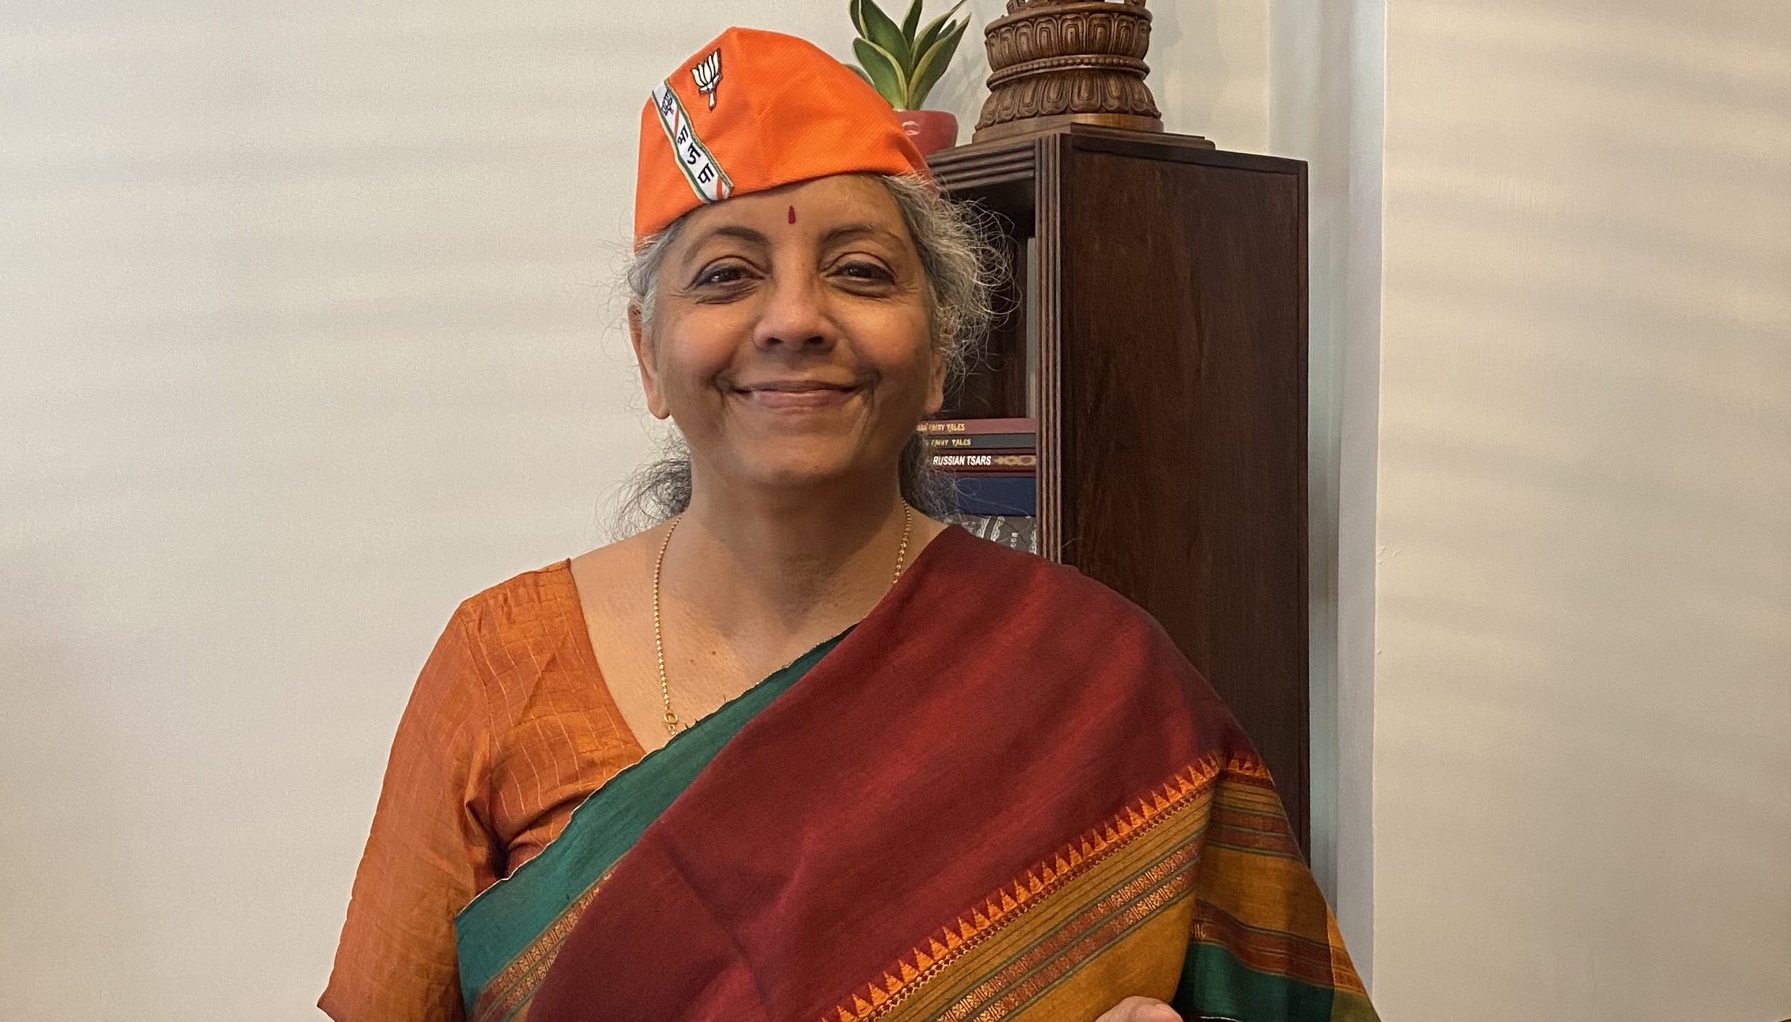 फोर्ब्सको एक सय शक्तिशाली महिलाको सूचीमा भारतीय अर्थमन्त्री निर्मला सीतारमणदेखि बङ्गलादेशकी सेख हसिना वाजिदसम्म